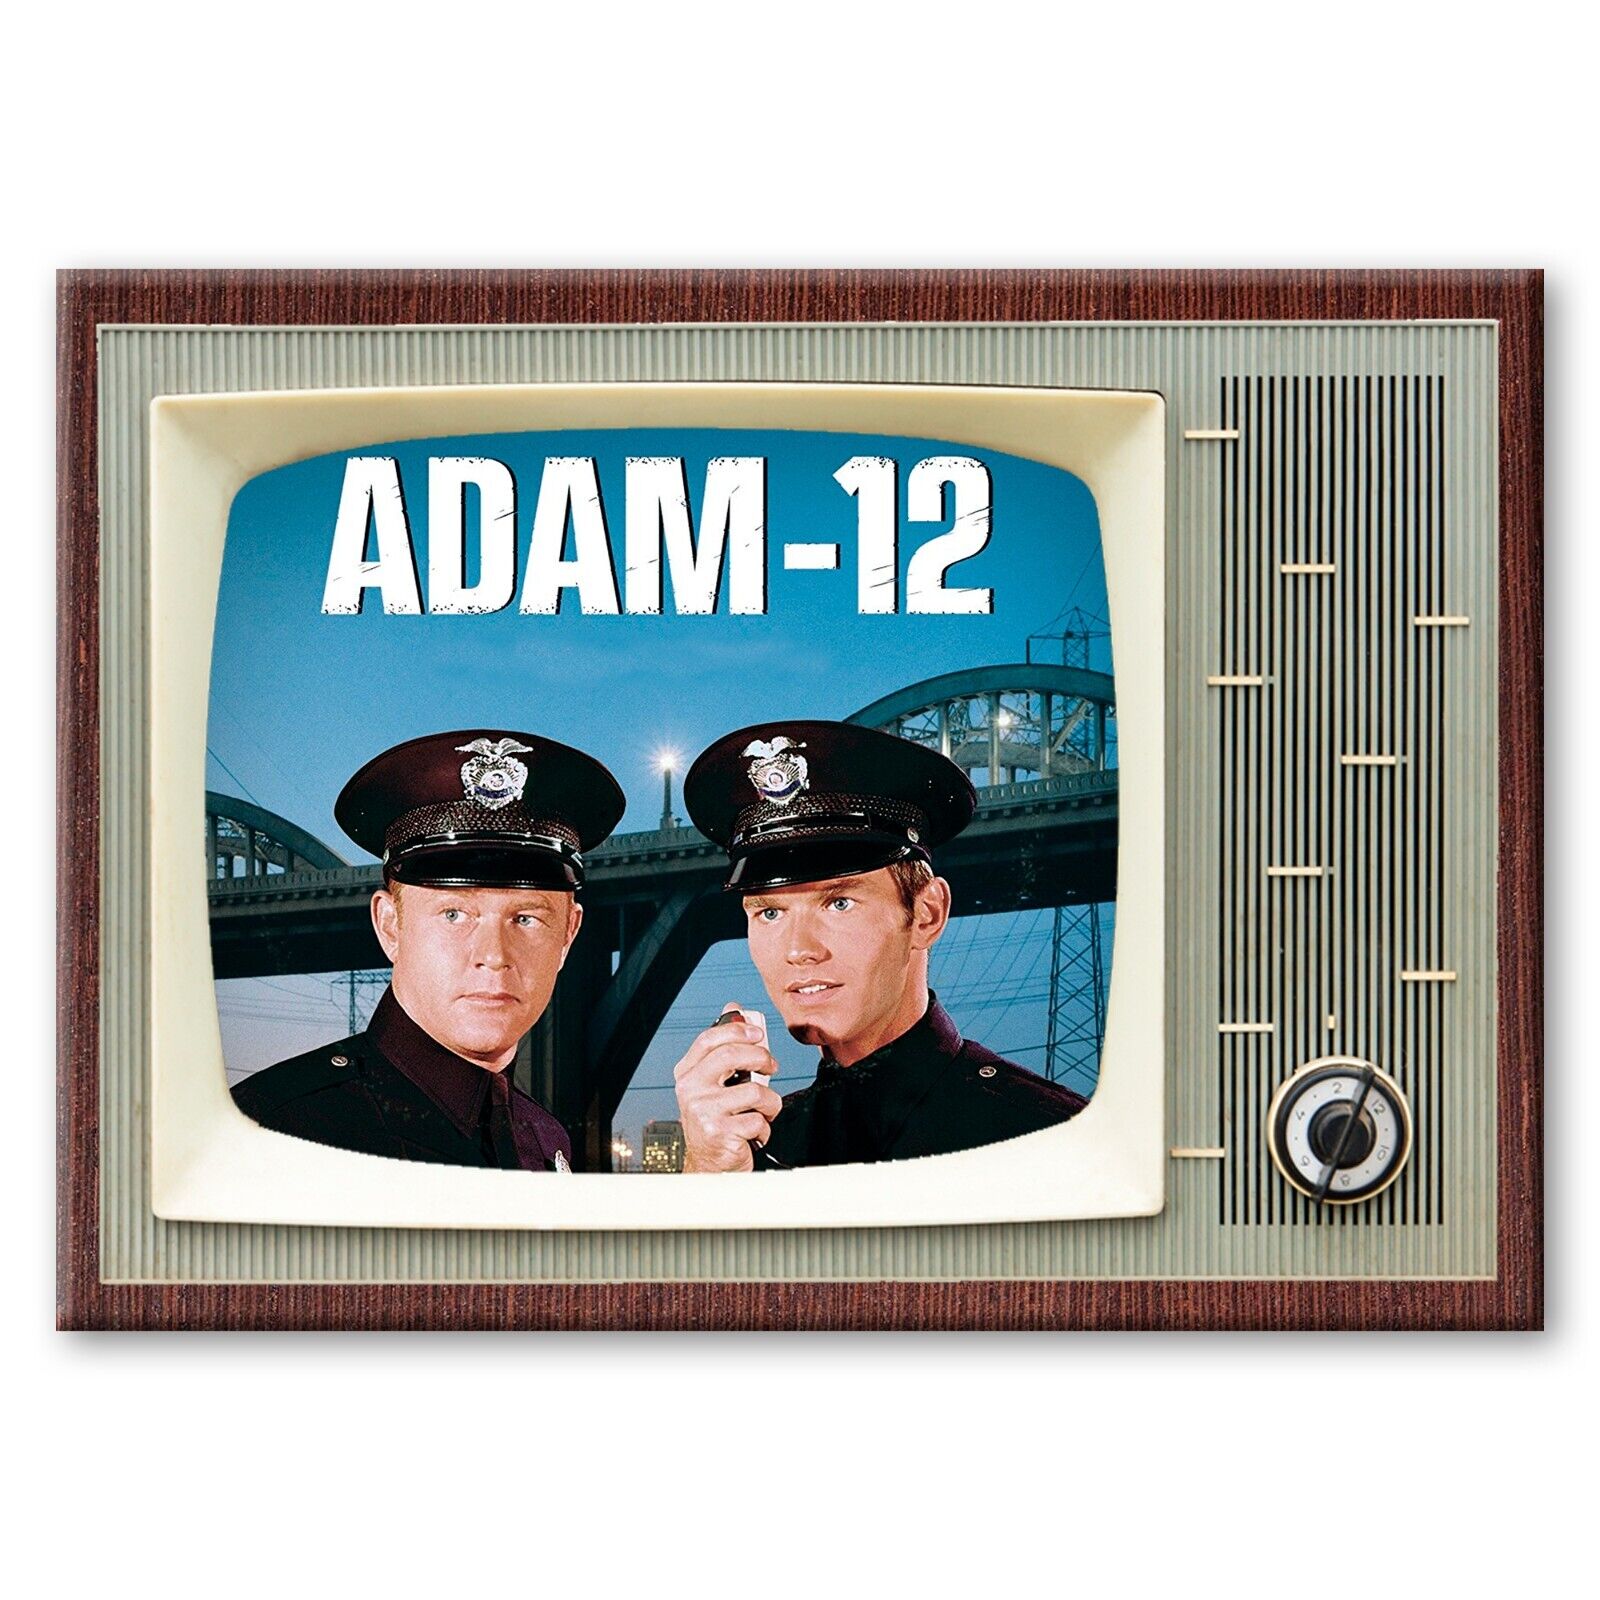 Adam 12 TV Show Classic TV 3.5 inches x 2.5 inches Steel Fridge Magnet